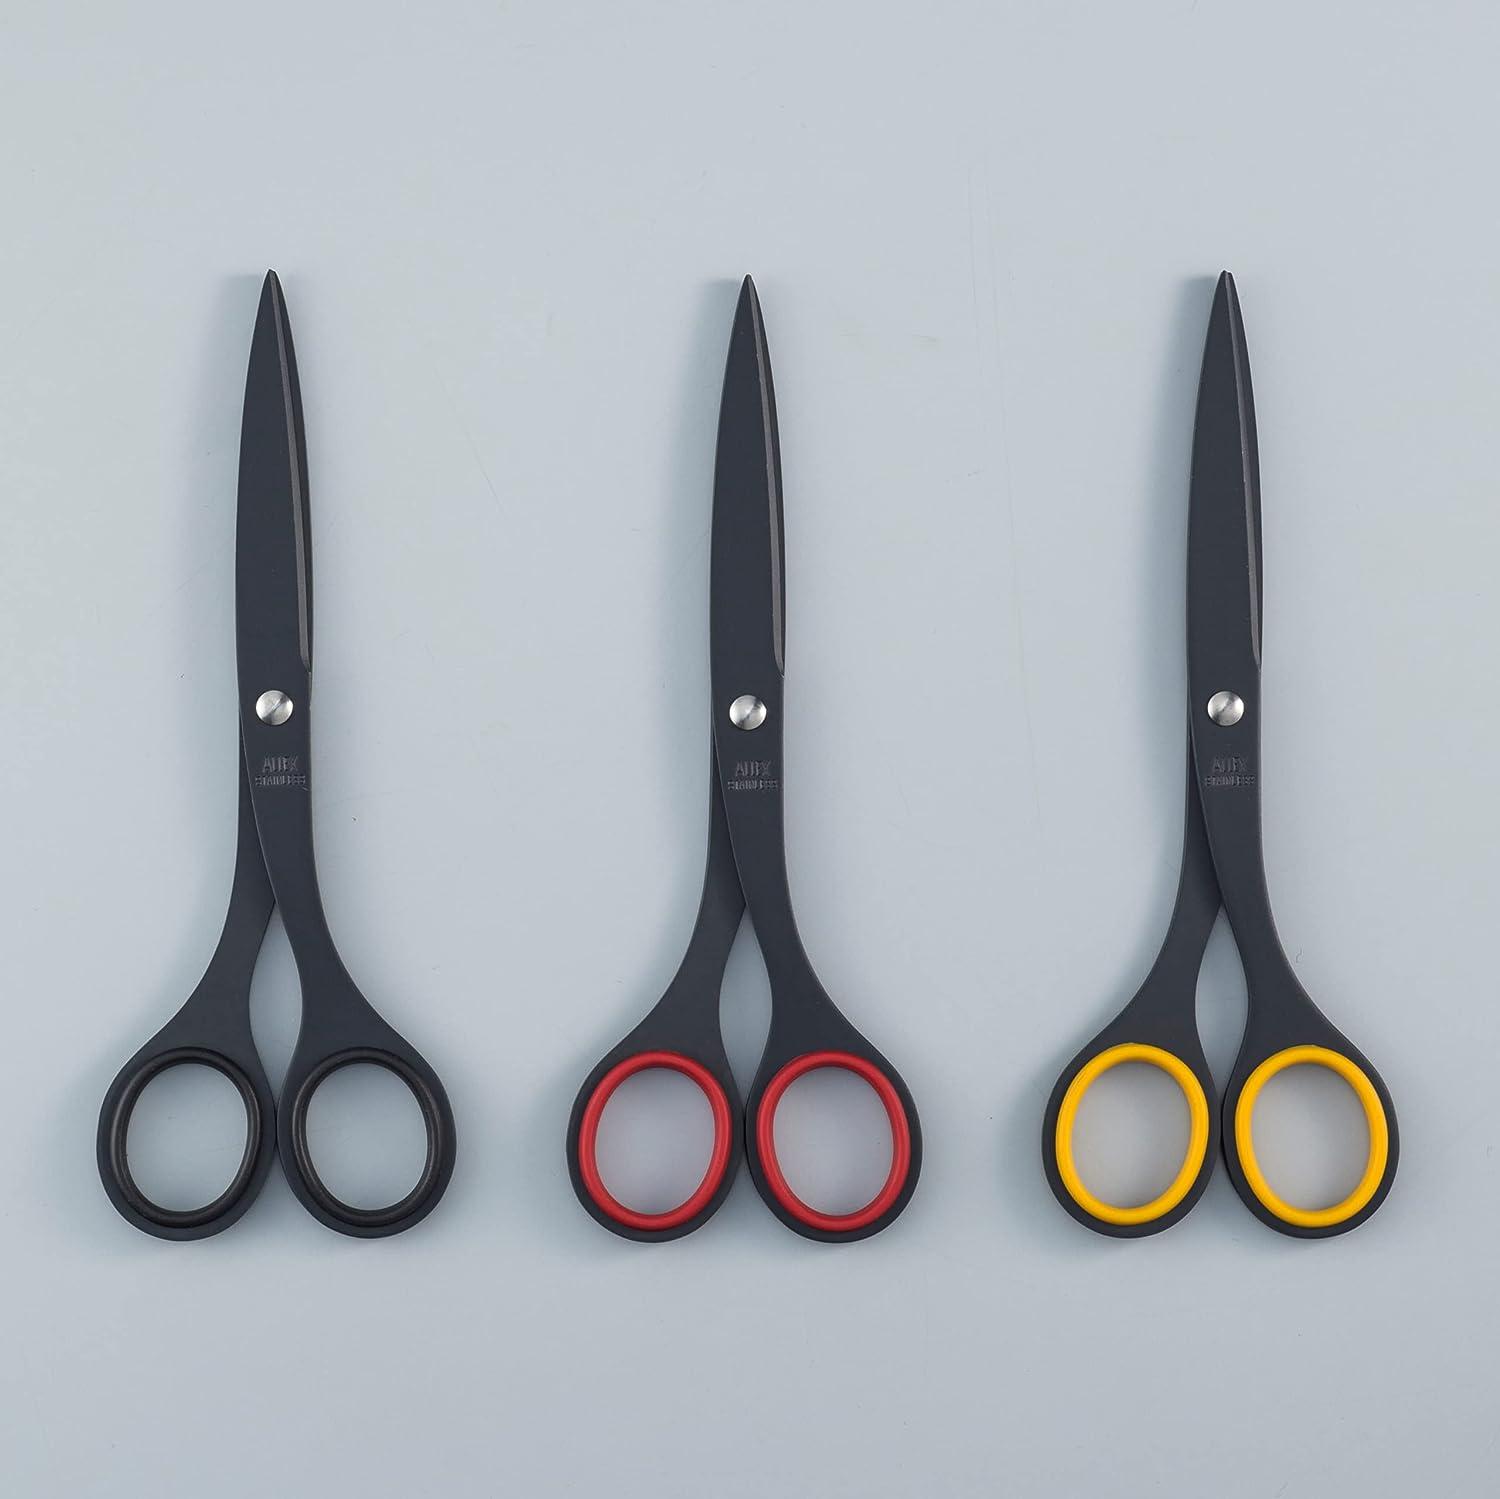 Desk scissors